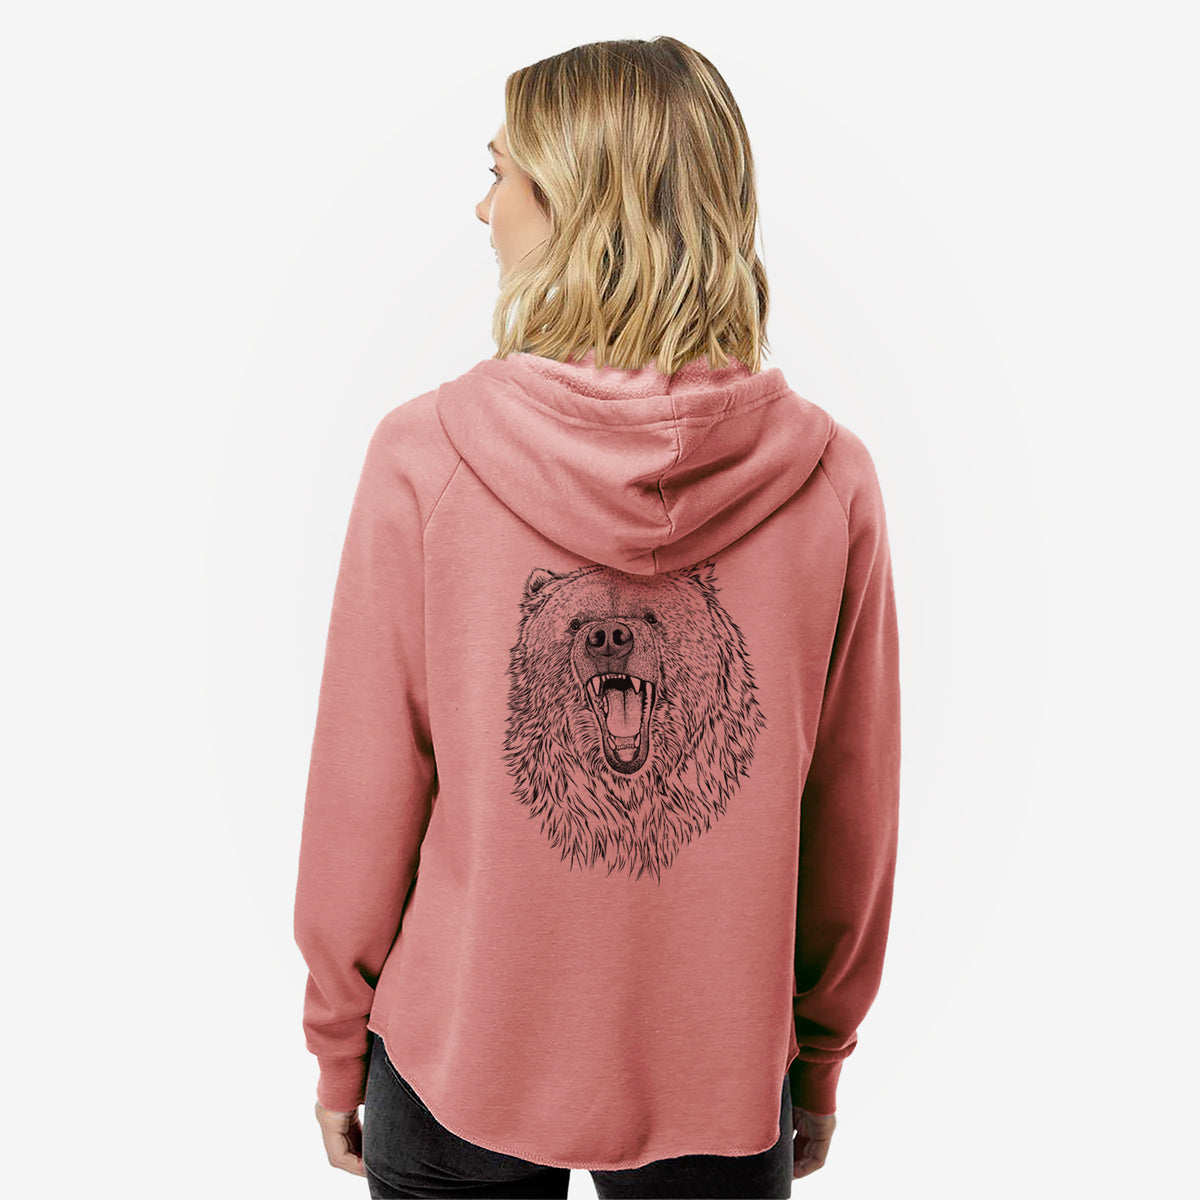 Ursus arctos - Kodiak Bear - Women&#39;s Cali Wave Zip-Up Sweatshirt